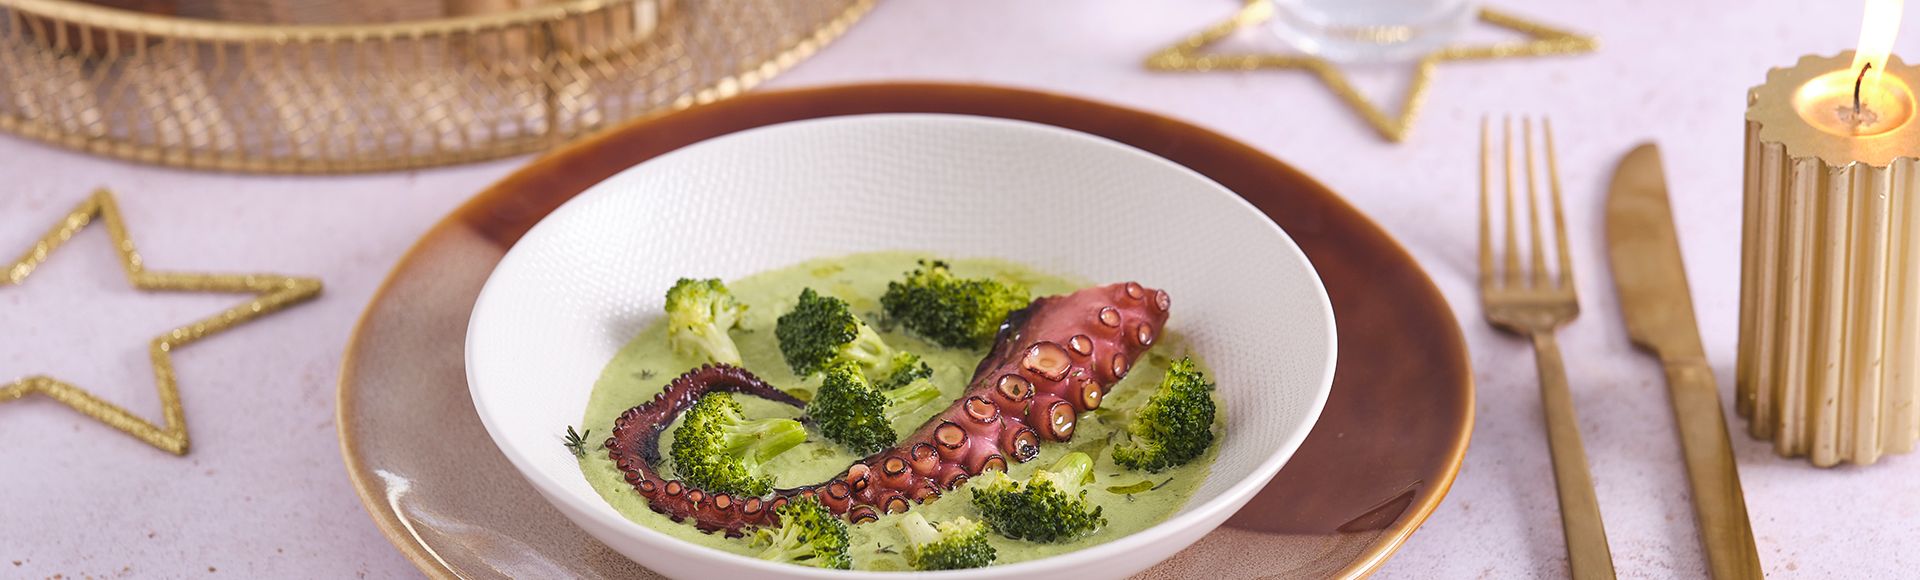 Geroosterde octopus en broccoli crème